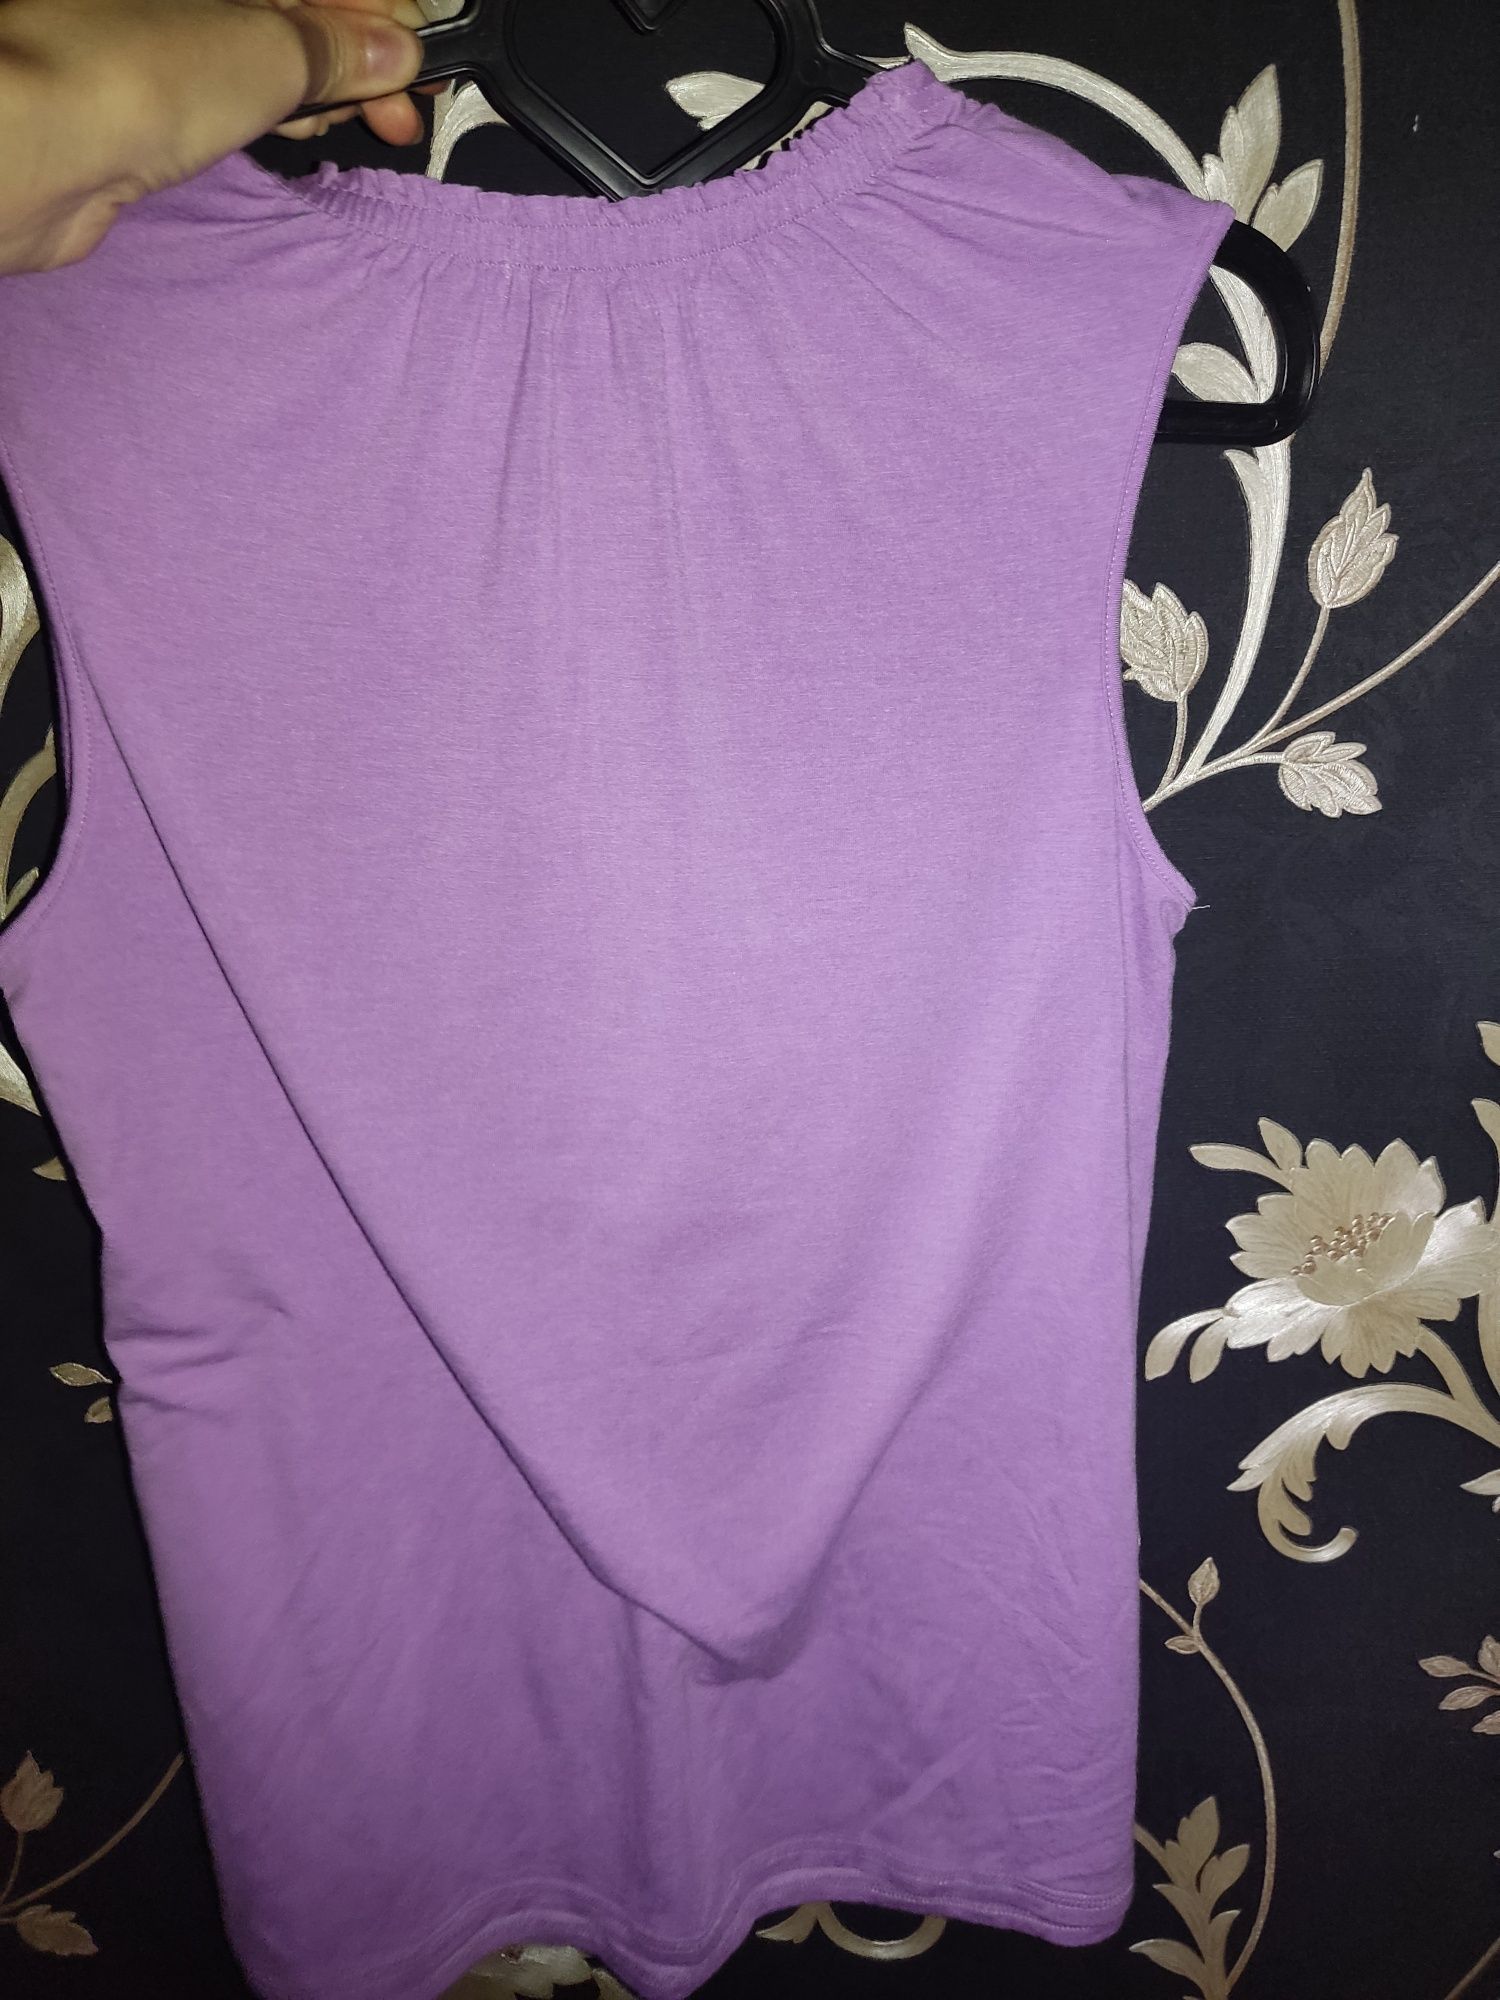 Великодпнаямайка-кофточка,нежно-фиолетового цвета от фирмы HUE